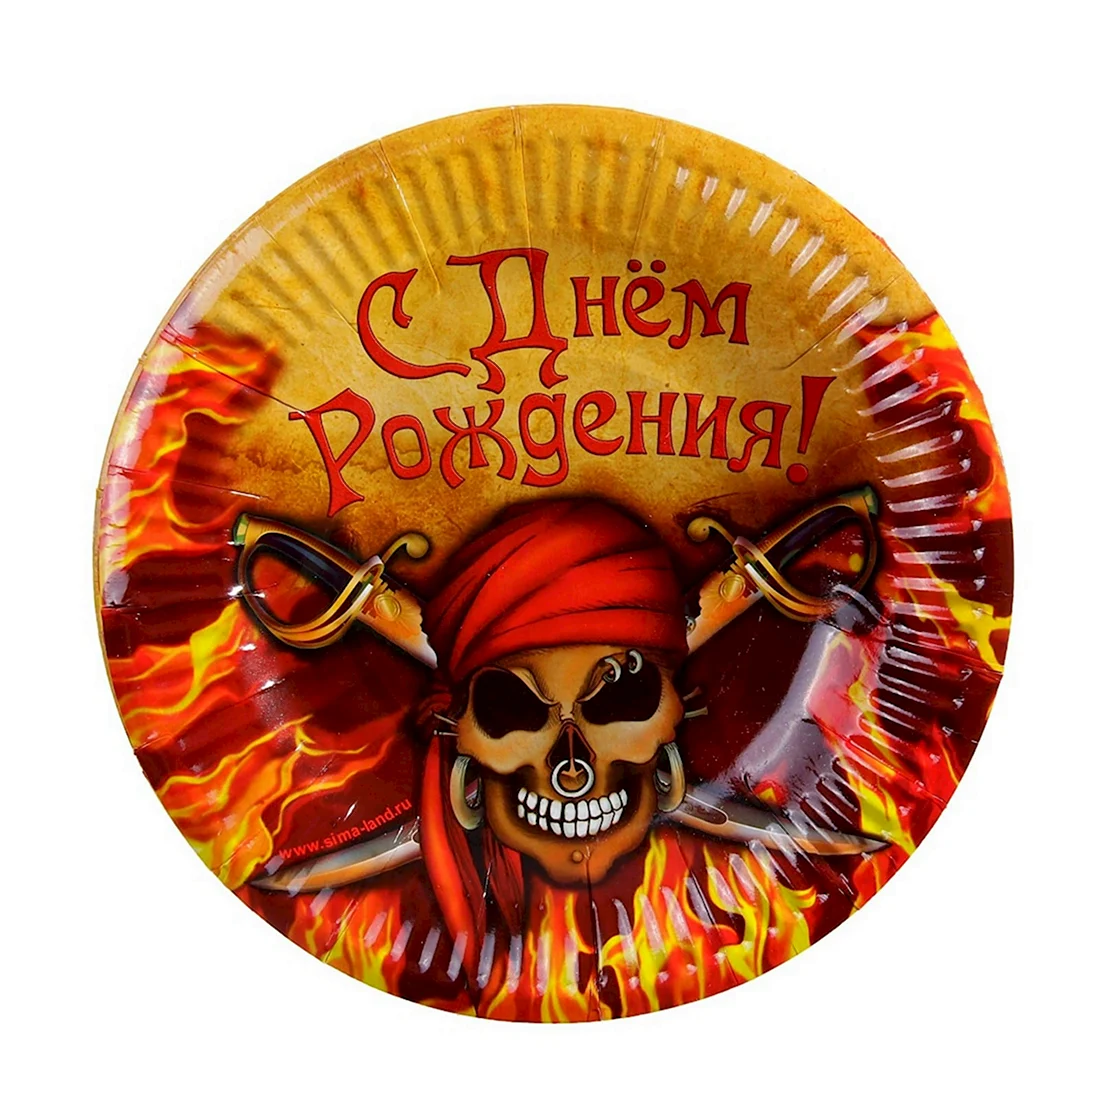 Идеи для пиратской вечеринки. Полезная информация на блоге интернет-магазина вторсырье-м.рф